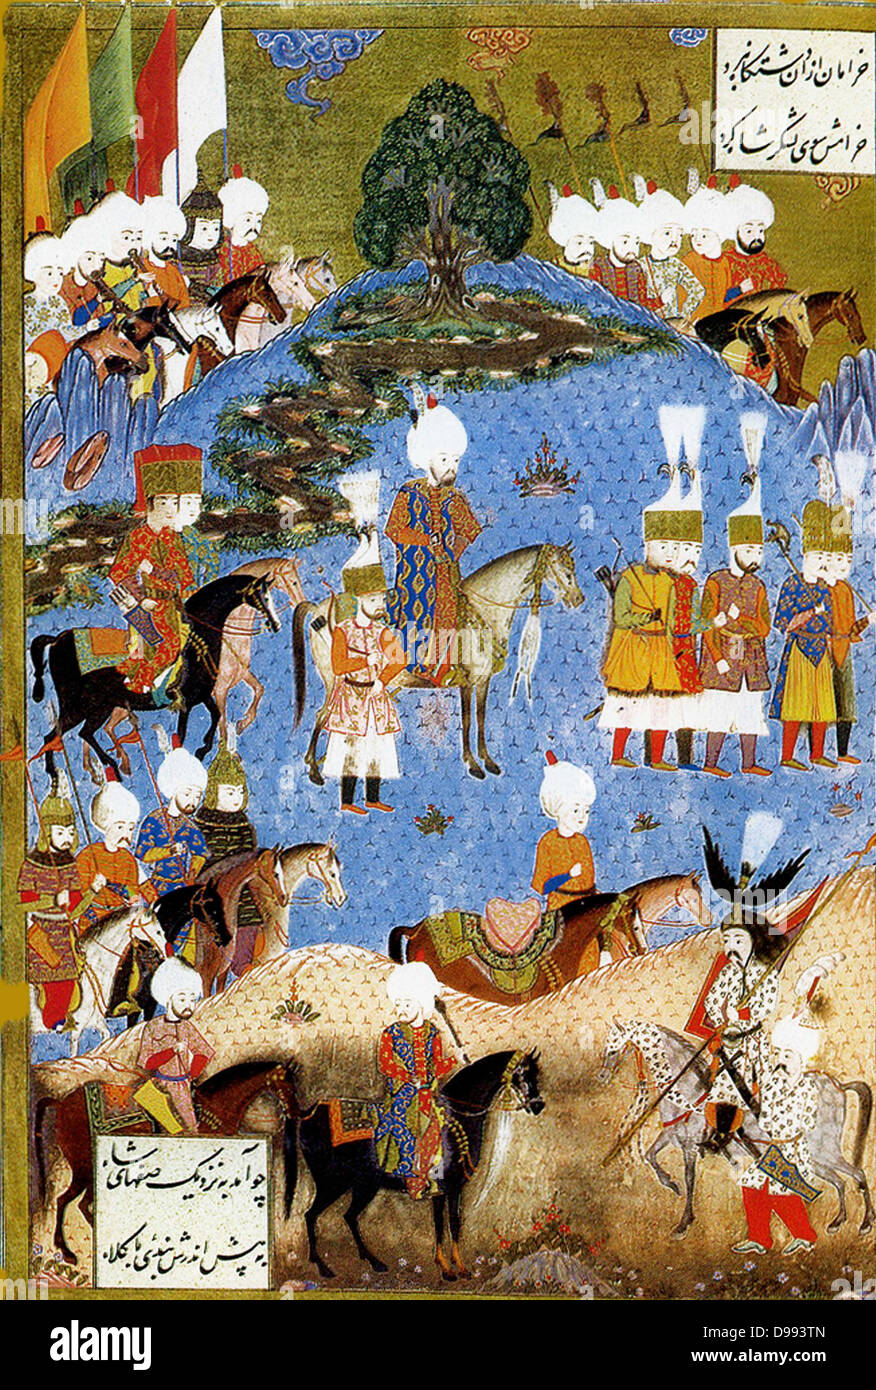 Suleiman I, (1494 - 1566) lungo-sultano regnante dell'Impero Ottomano, dal 1520 fino alla sua morte in 1566.Solimano il Magnifico marciando con esercito in Nakhichevan, estate 1554. Data 1561(1561) Foto Stock